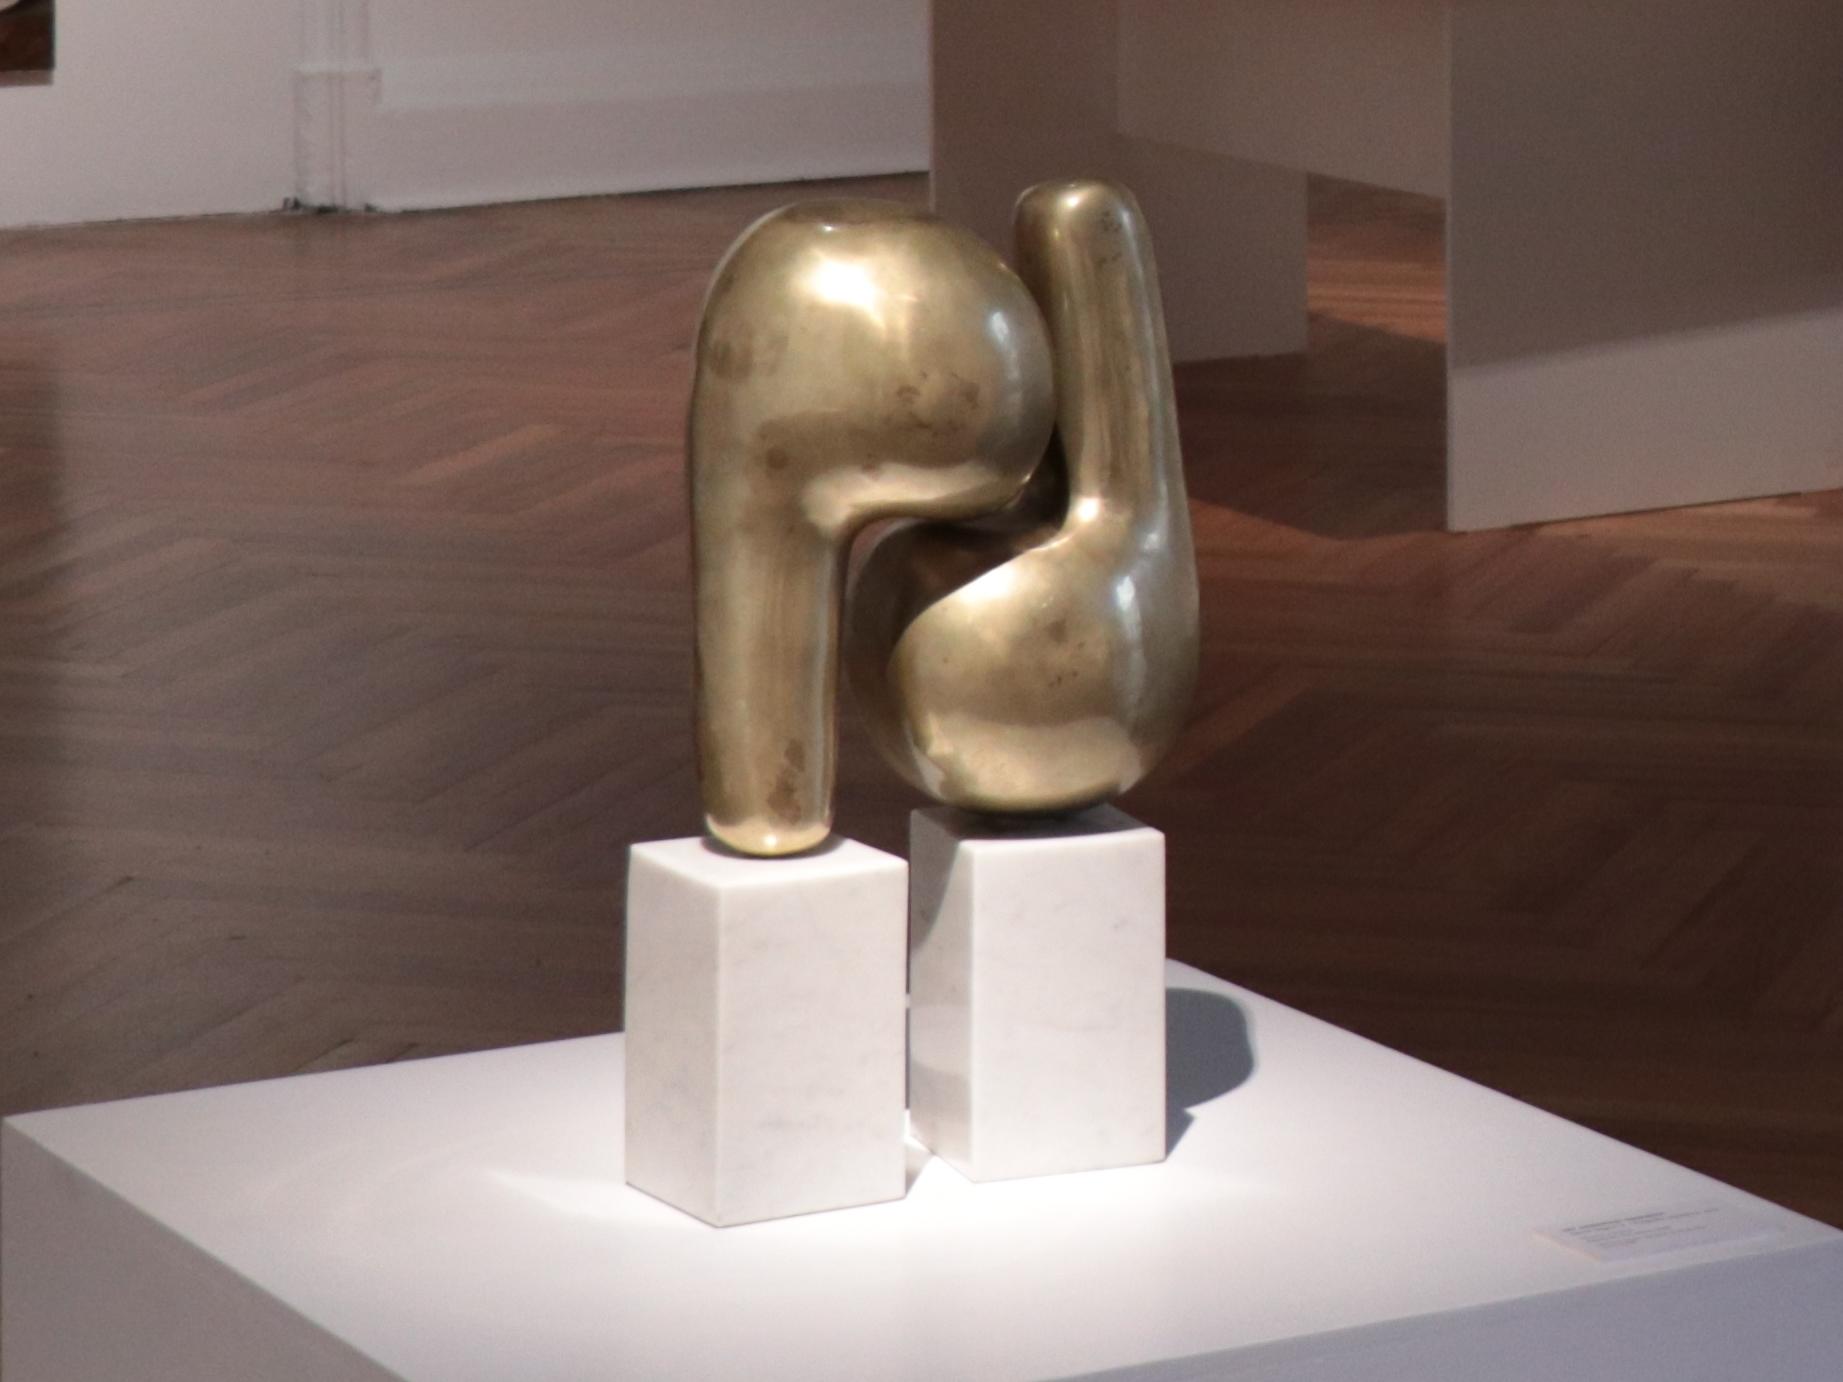 Fotografía de una escultura en metal dorado, con formas curvas